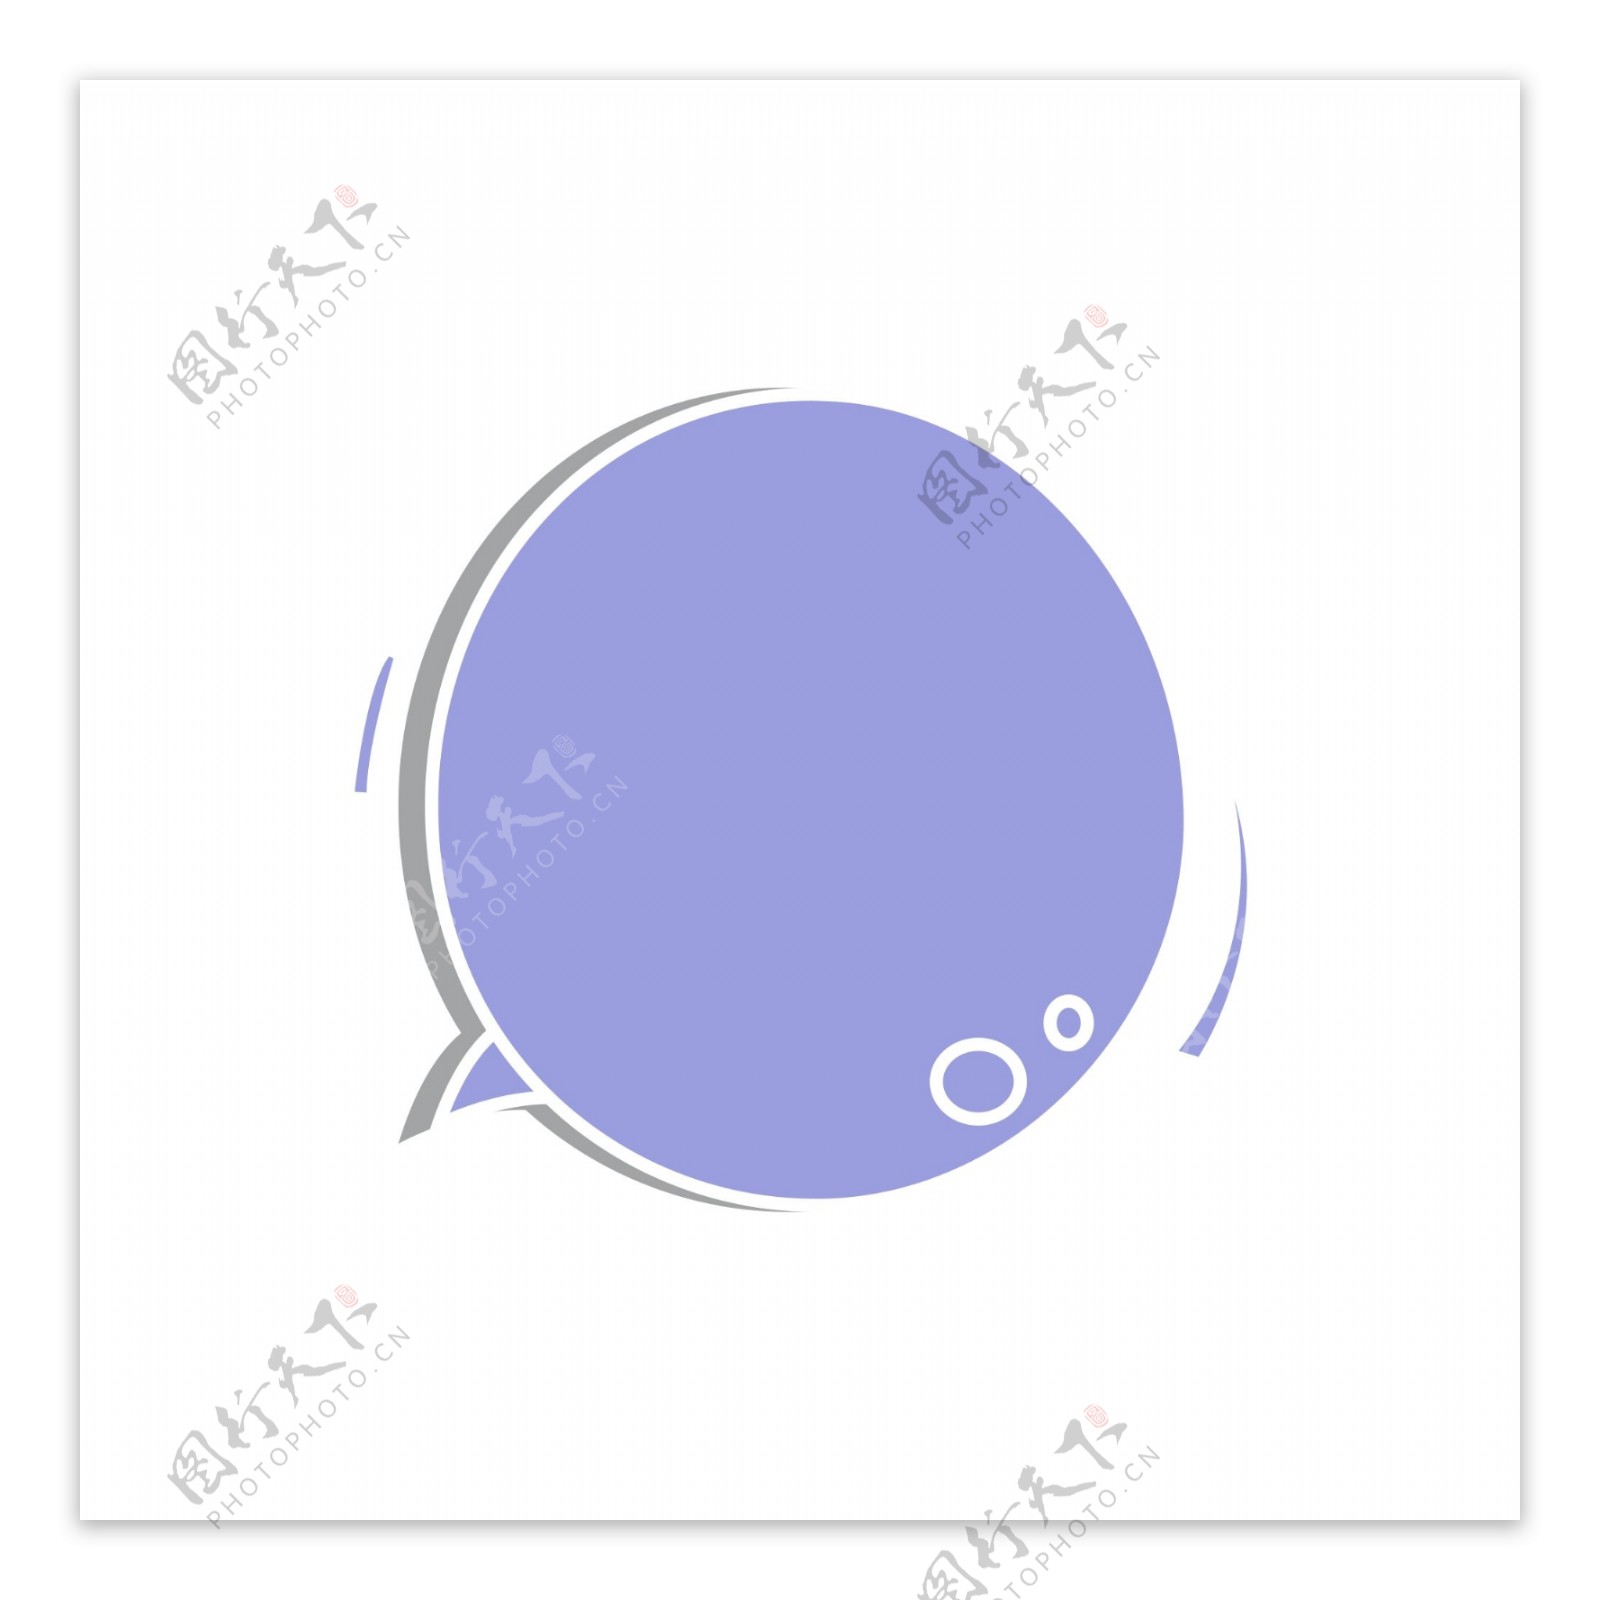 紫色圆形简约气泡框对话框